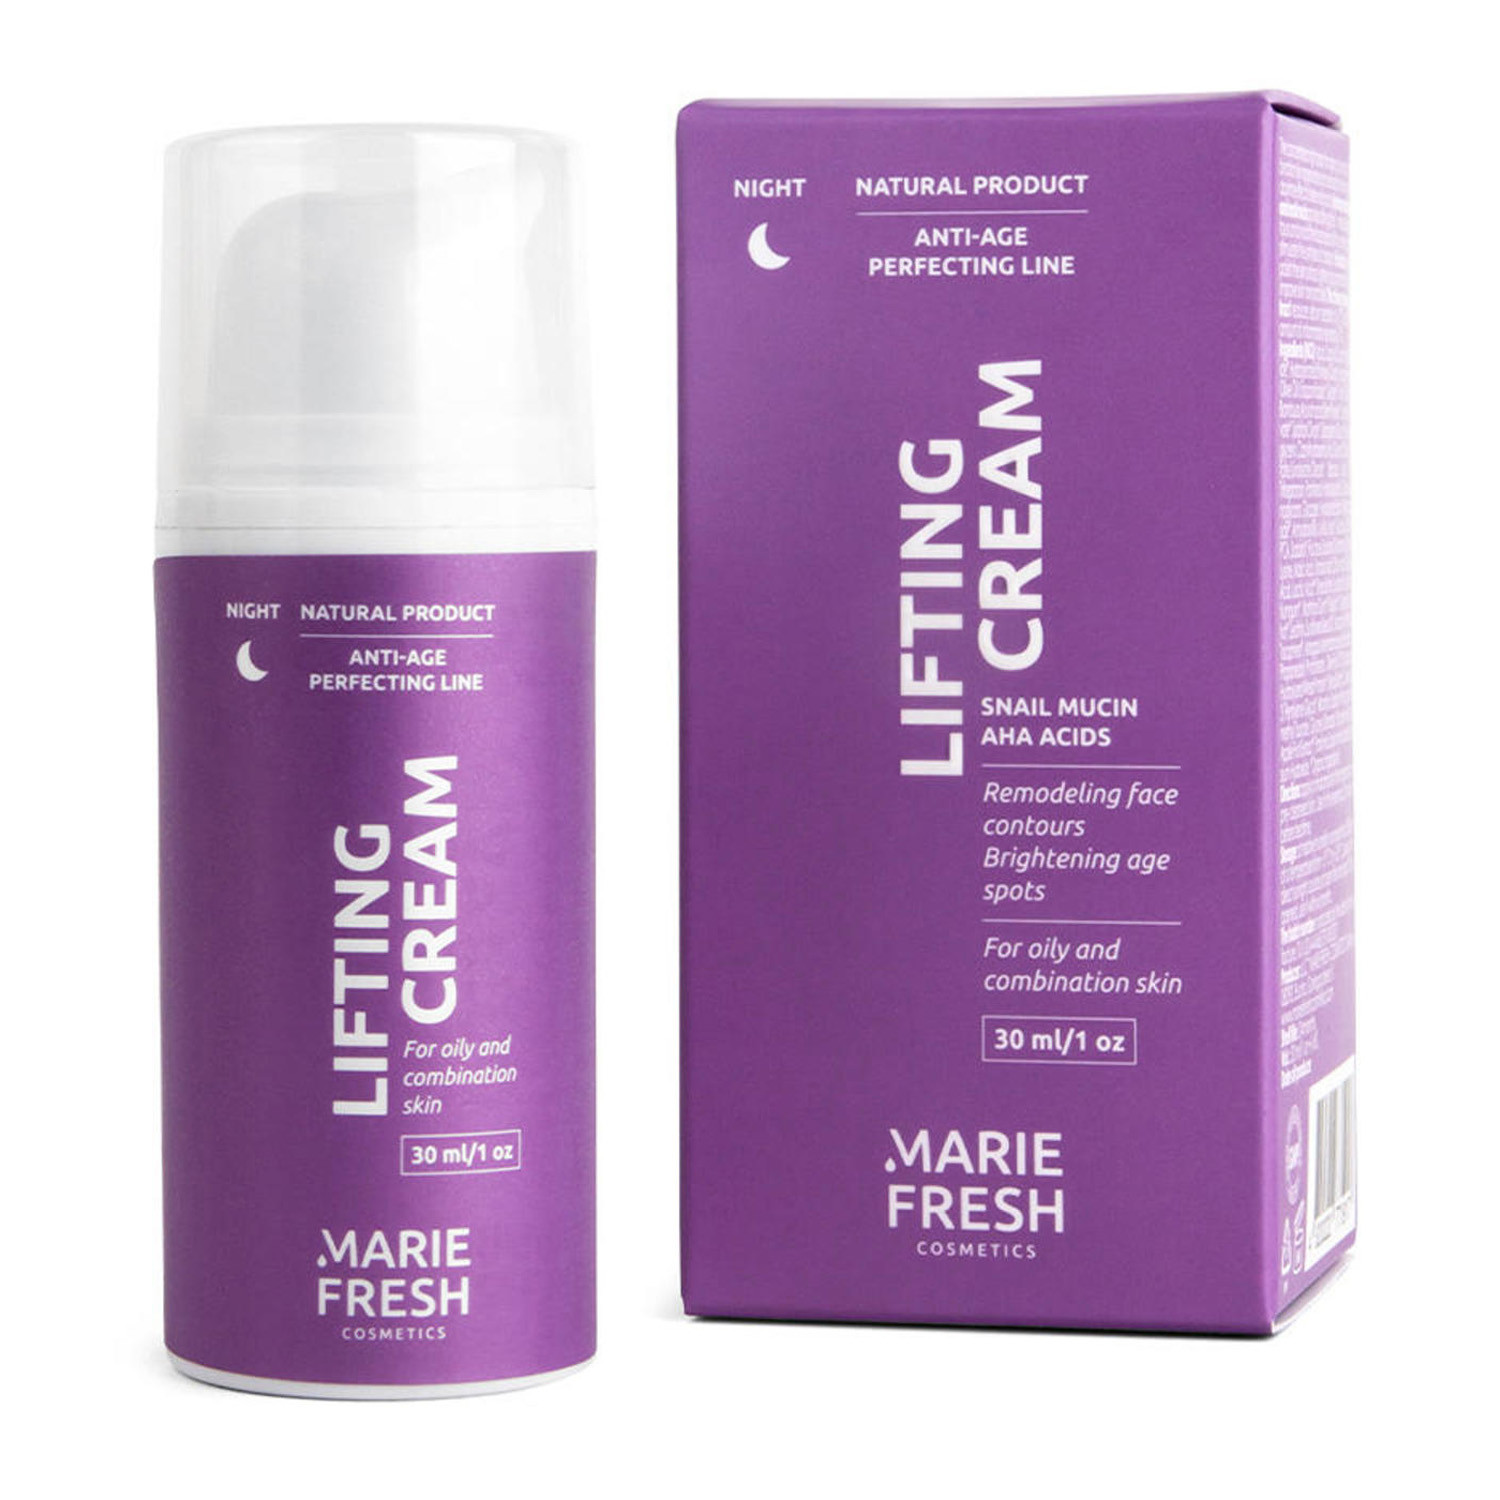 Ночной крем-лифтинг для жирной и комбинированной кожи Marie Fresh Cosmetics Anti-age Perfecting Line Lifting Night Cream